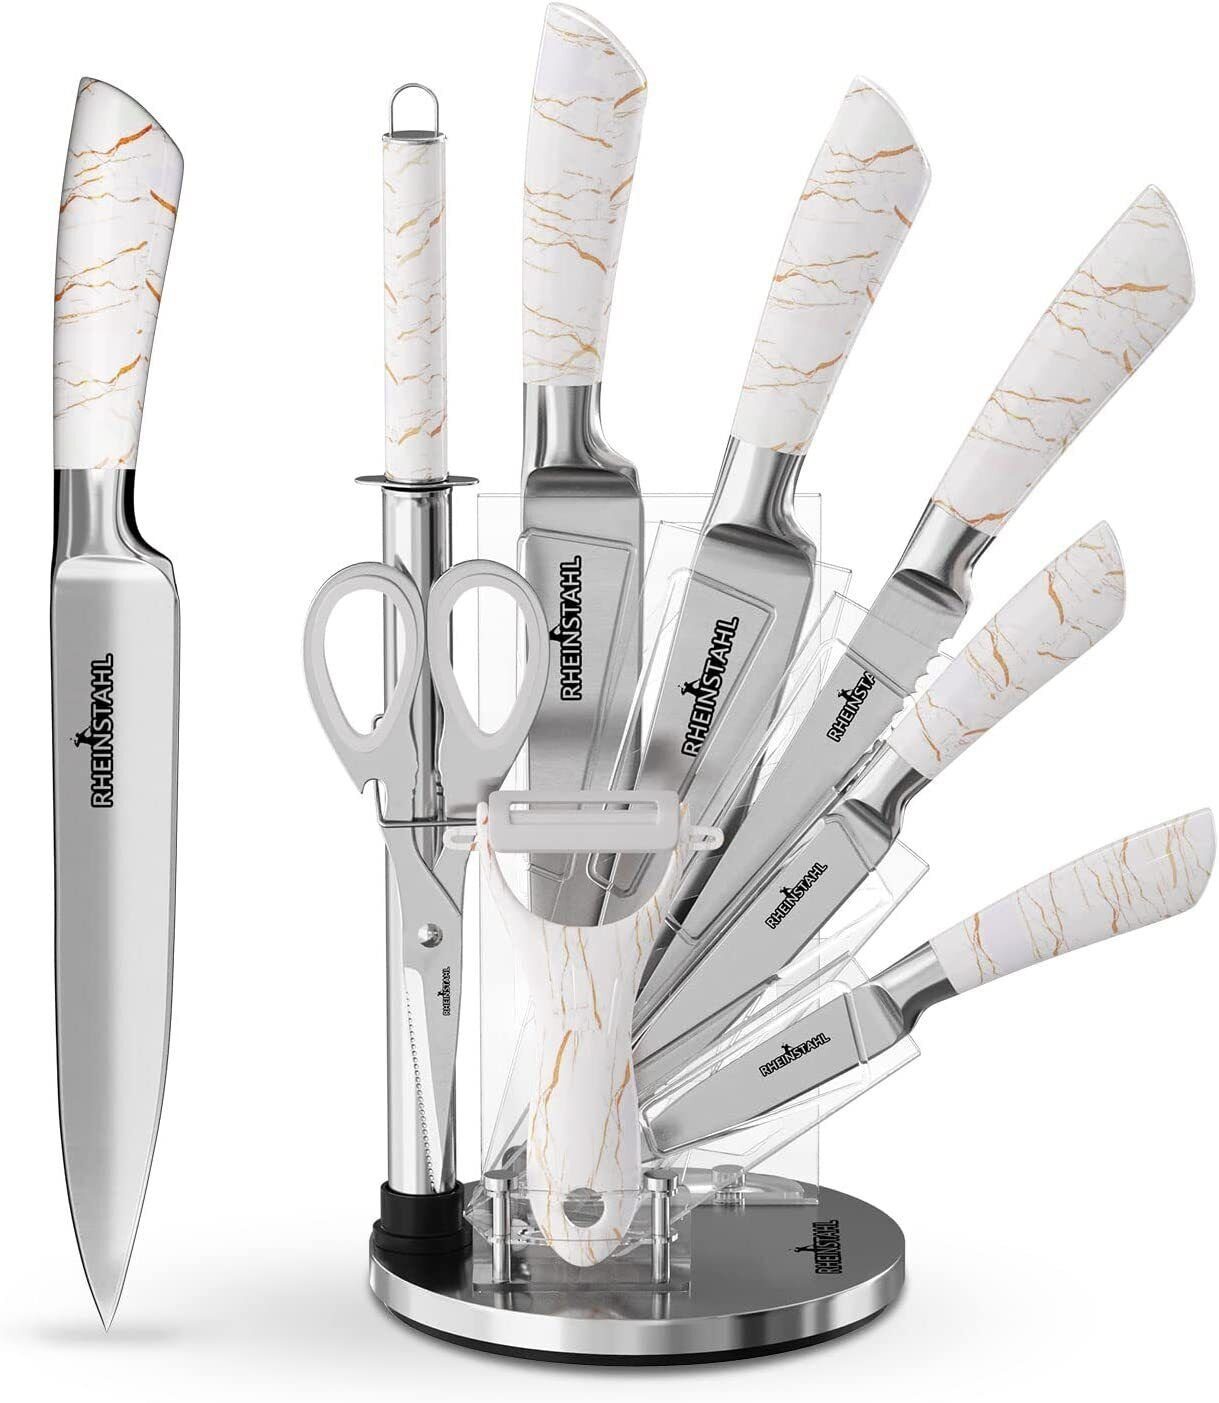 RHEINSTAHL Messer-Set 9 teilig Messerblock Messerset Küchenmesser Set Profi Kochmesser, Edelstahl hochwertiges SelbstschärfenMesser Küchenmesser Set Weiss